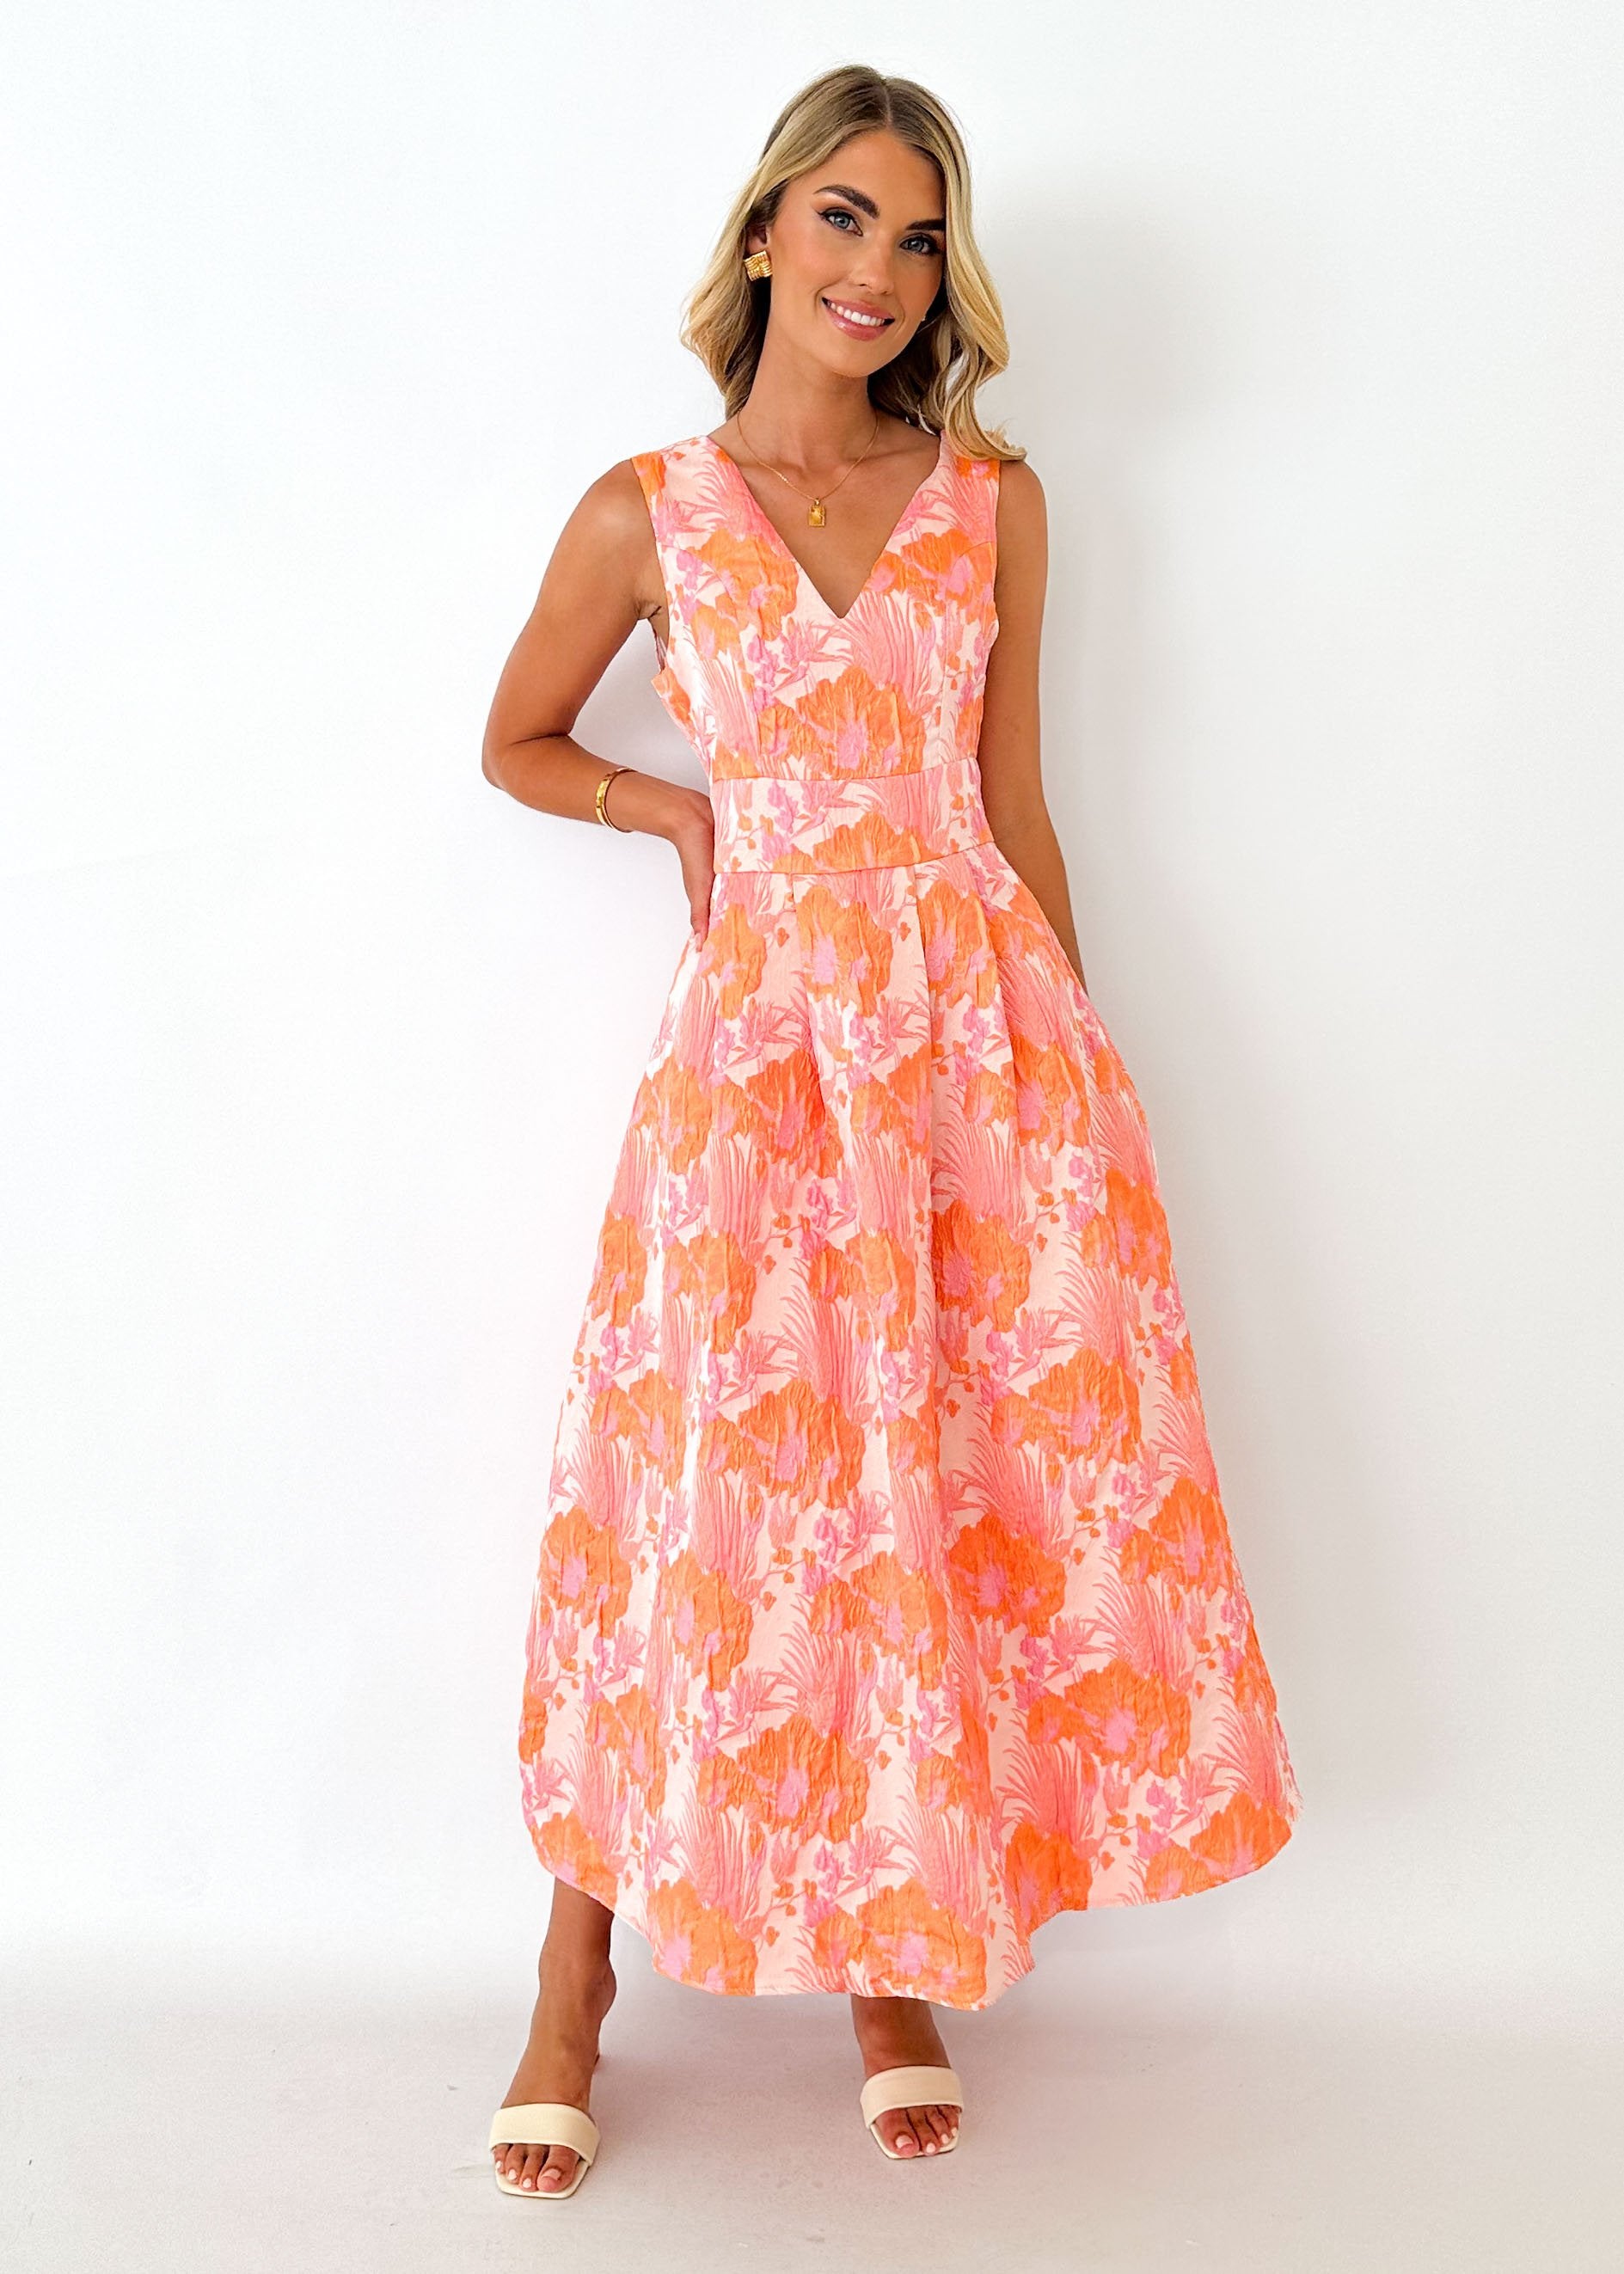 Artoe Midi Dress - Peach Jacquard